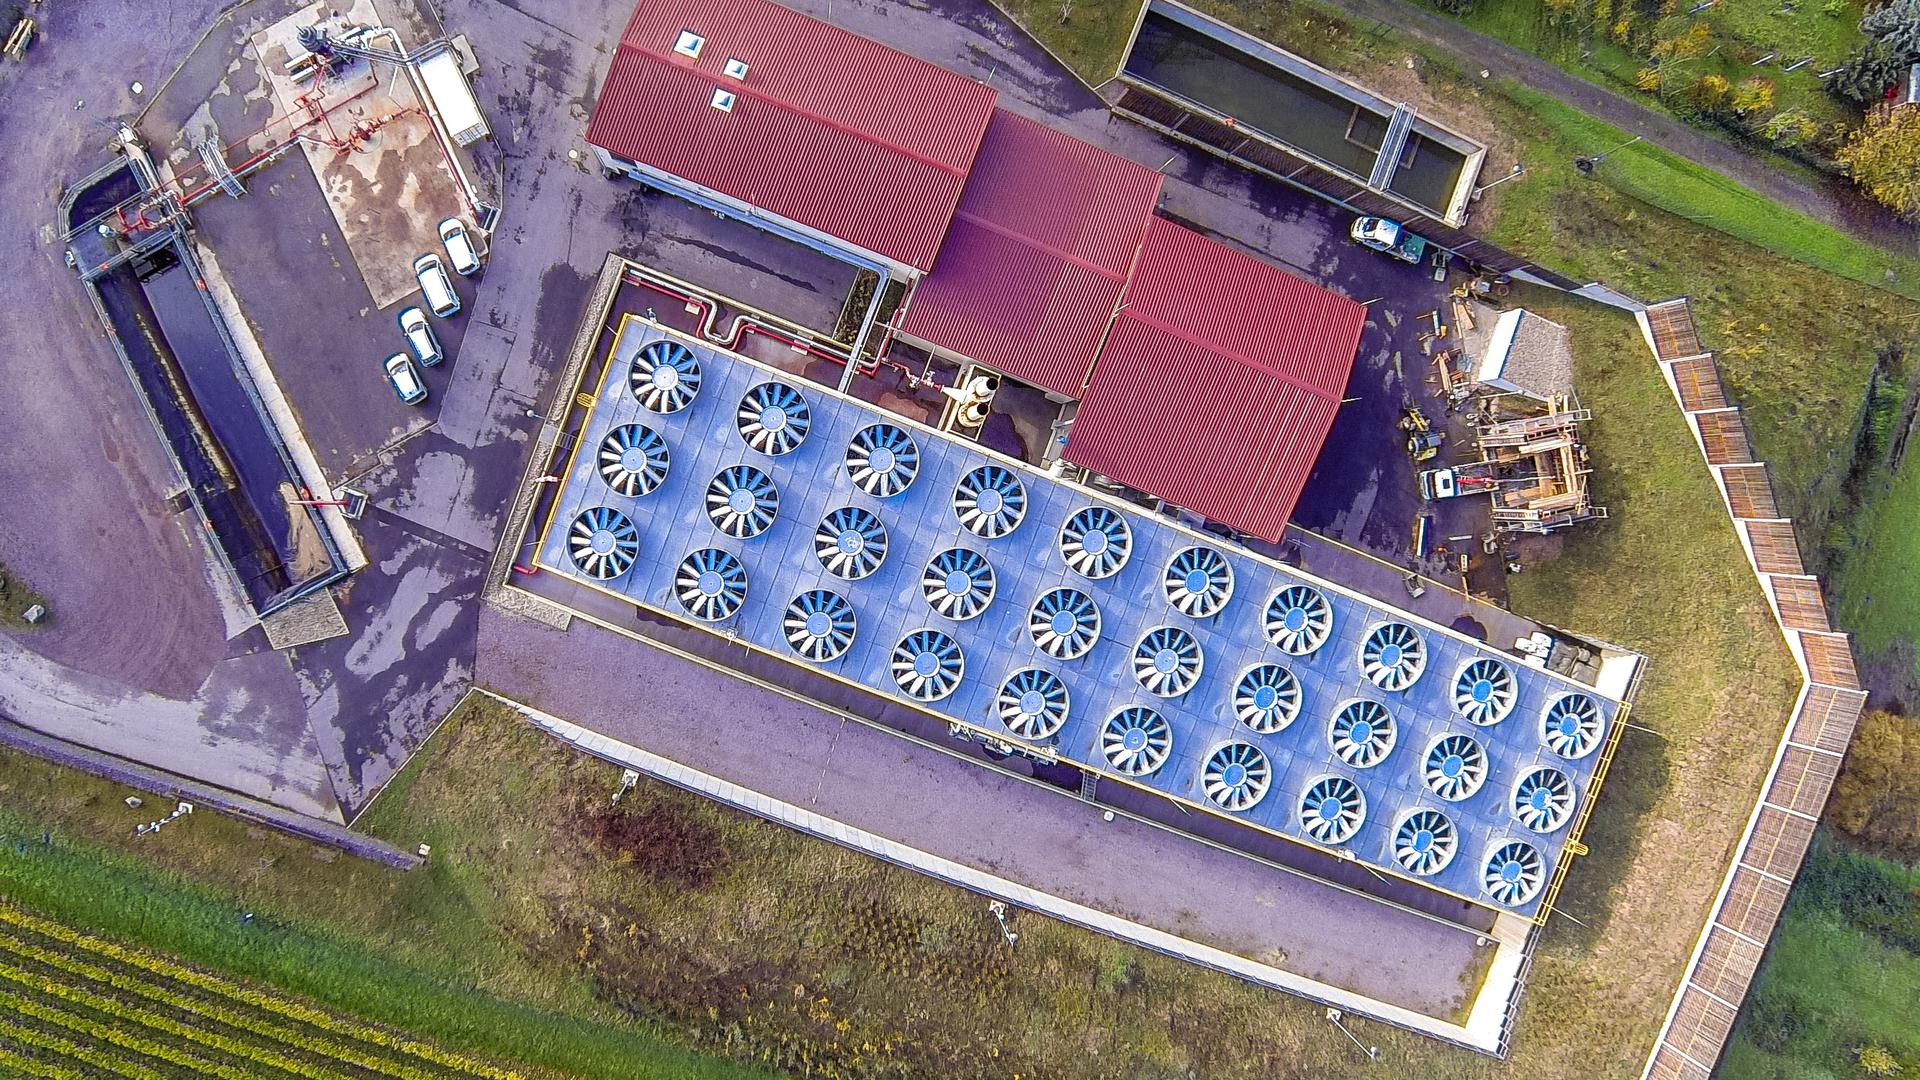 Seit vergangenen Dezember im Besitz der Karlruher Vulcan Energie Ressourcen GmbH: Im Geothermie-Kraftwerk im pfälzischen Insheim wird jetzt neben Strom auch Lithium aus dem Thermalwasser gewonnen.